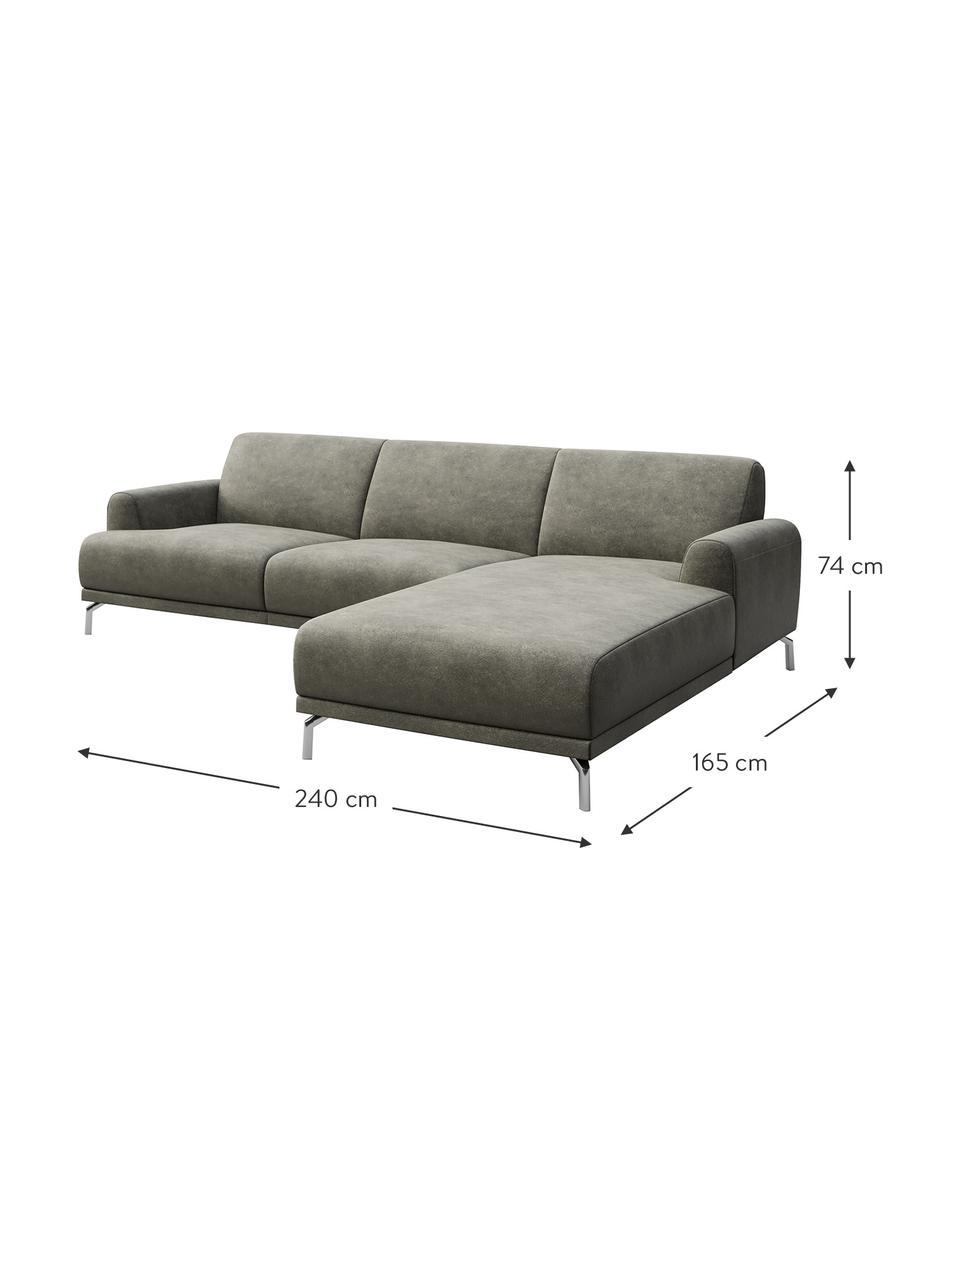 Sofa narożna z imitacją skóry Puzo, Tapicerka: 100% poliester imitujący , Nogi: metal lakierowany, Szary, S 240 x G 165 cm